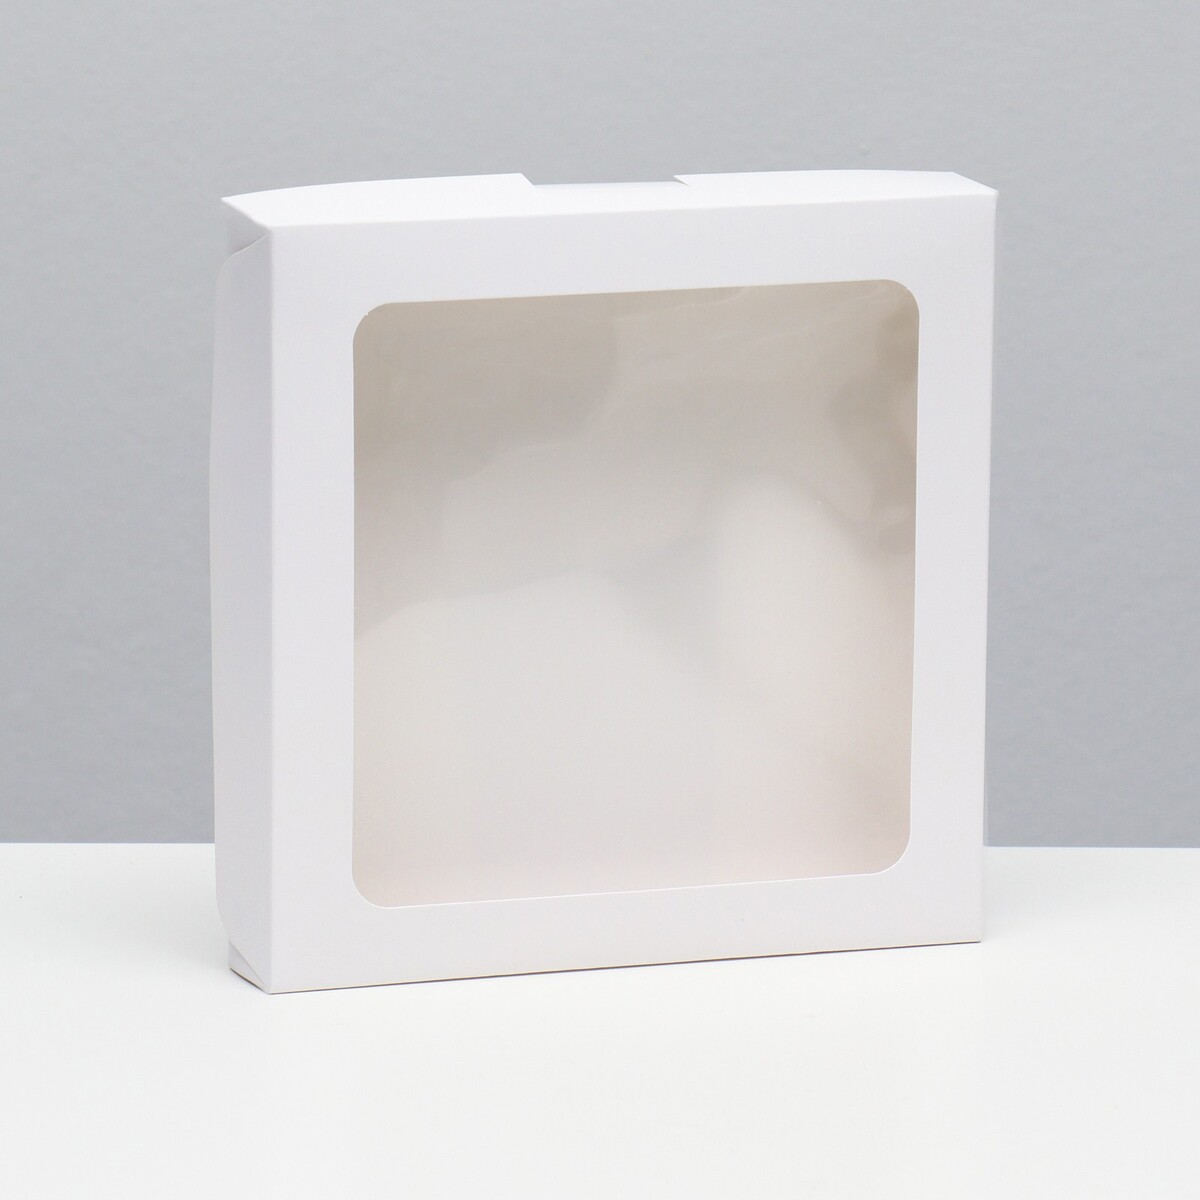 Коробка самосборная, белая, 19 х 19 х 3 см коробка самосборная дед мороз 11 х 8 х 2 см